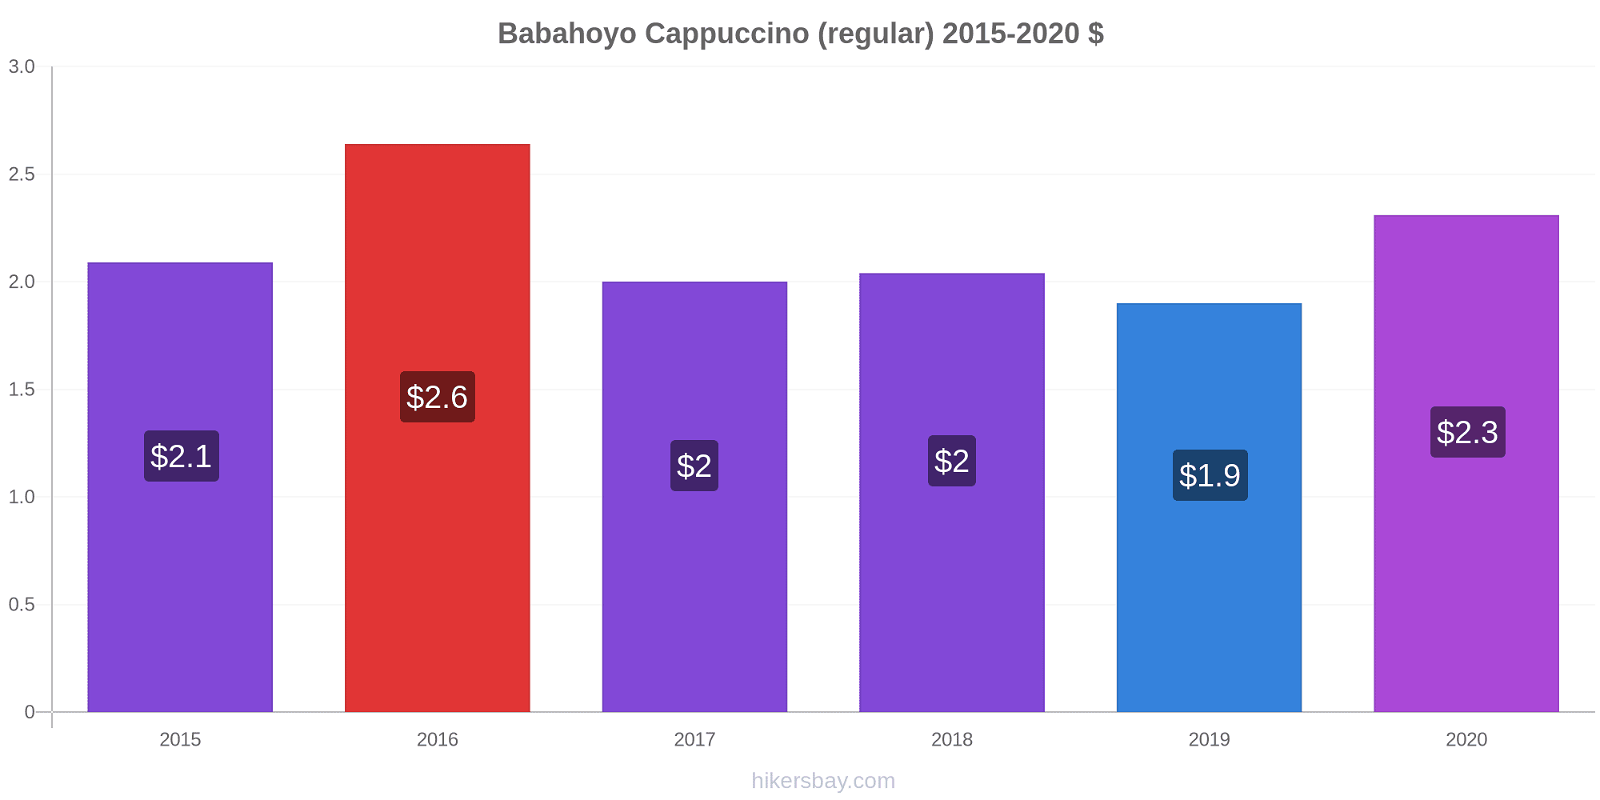 Babahoyo variação de preço Capuccino (regular) hikersbay.com